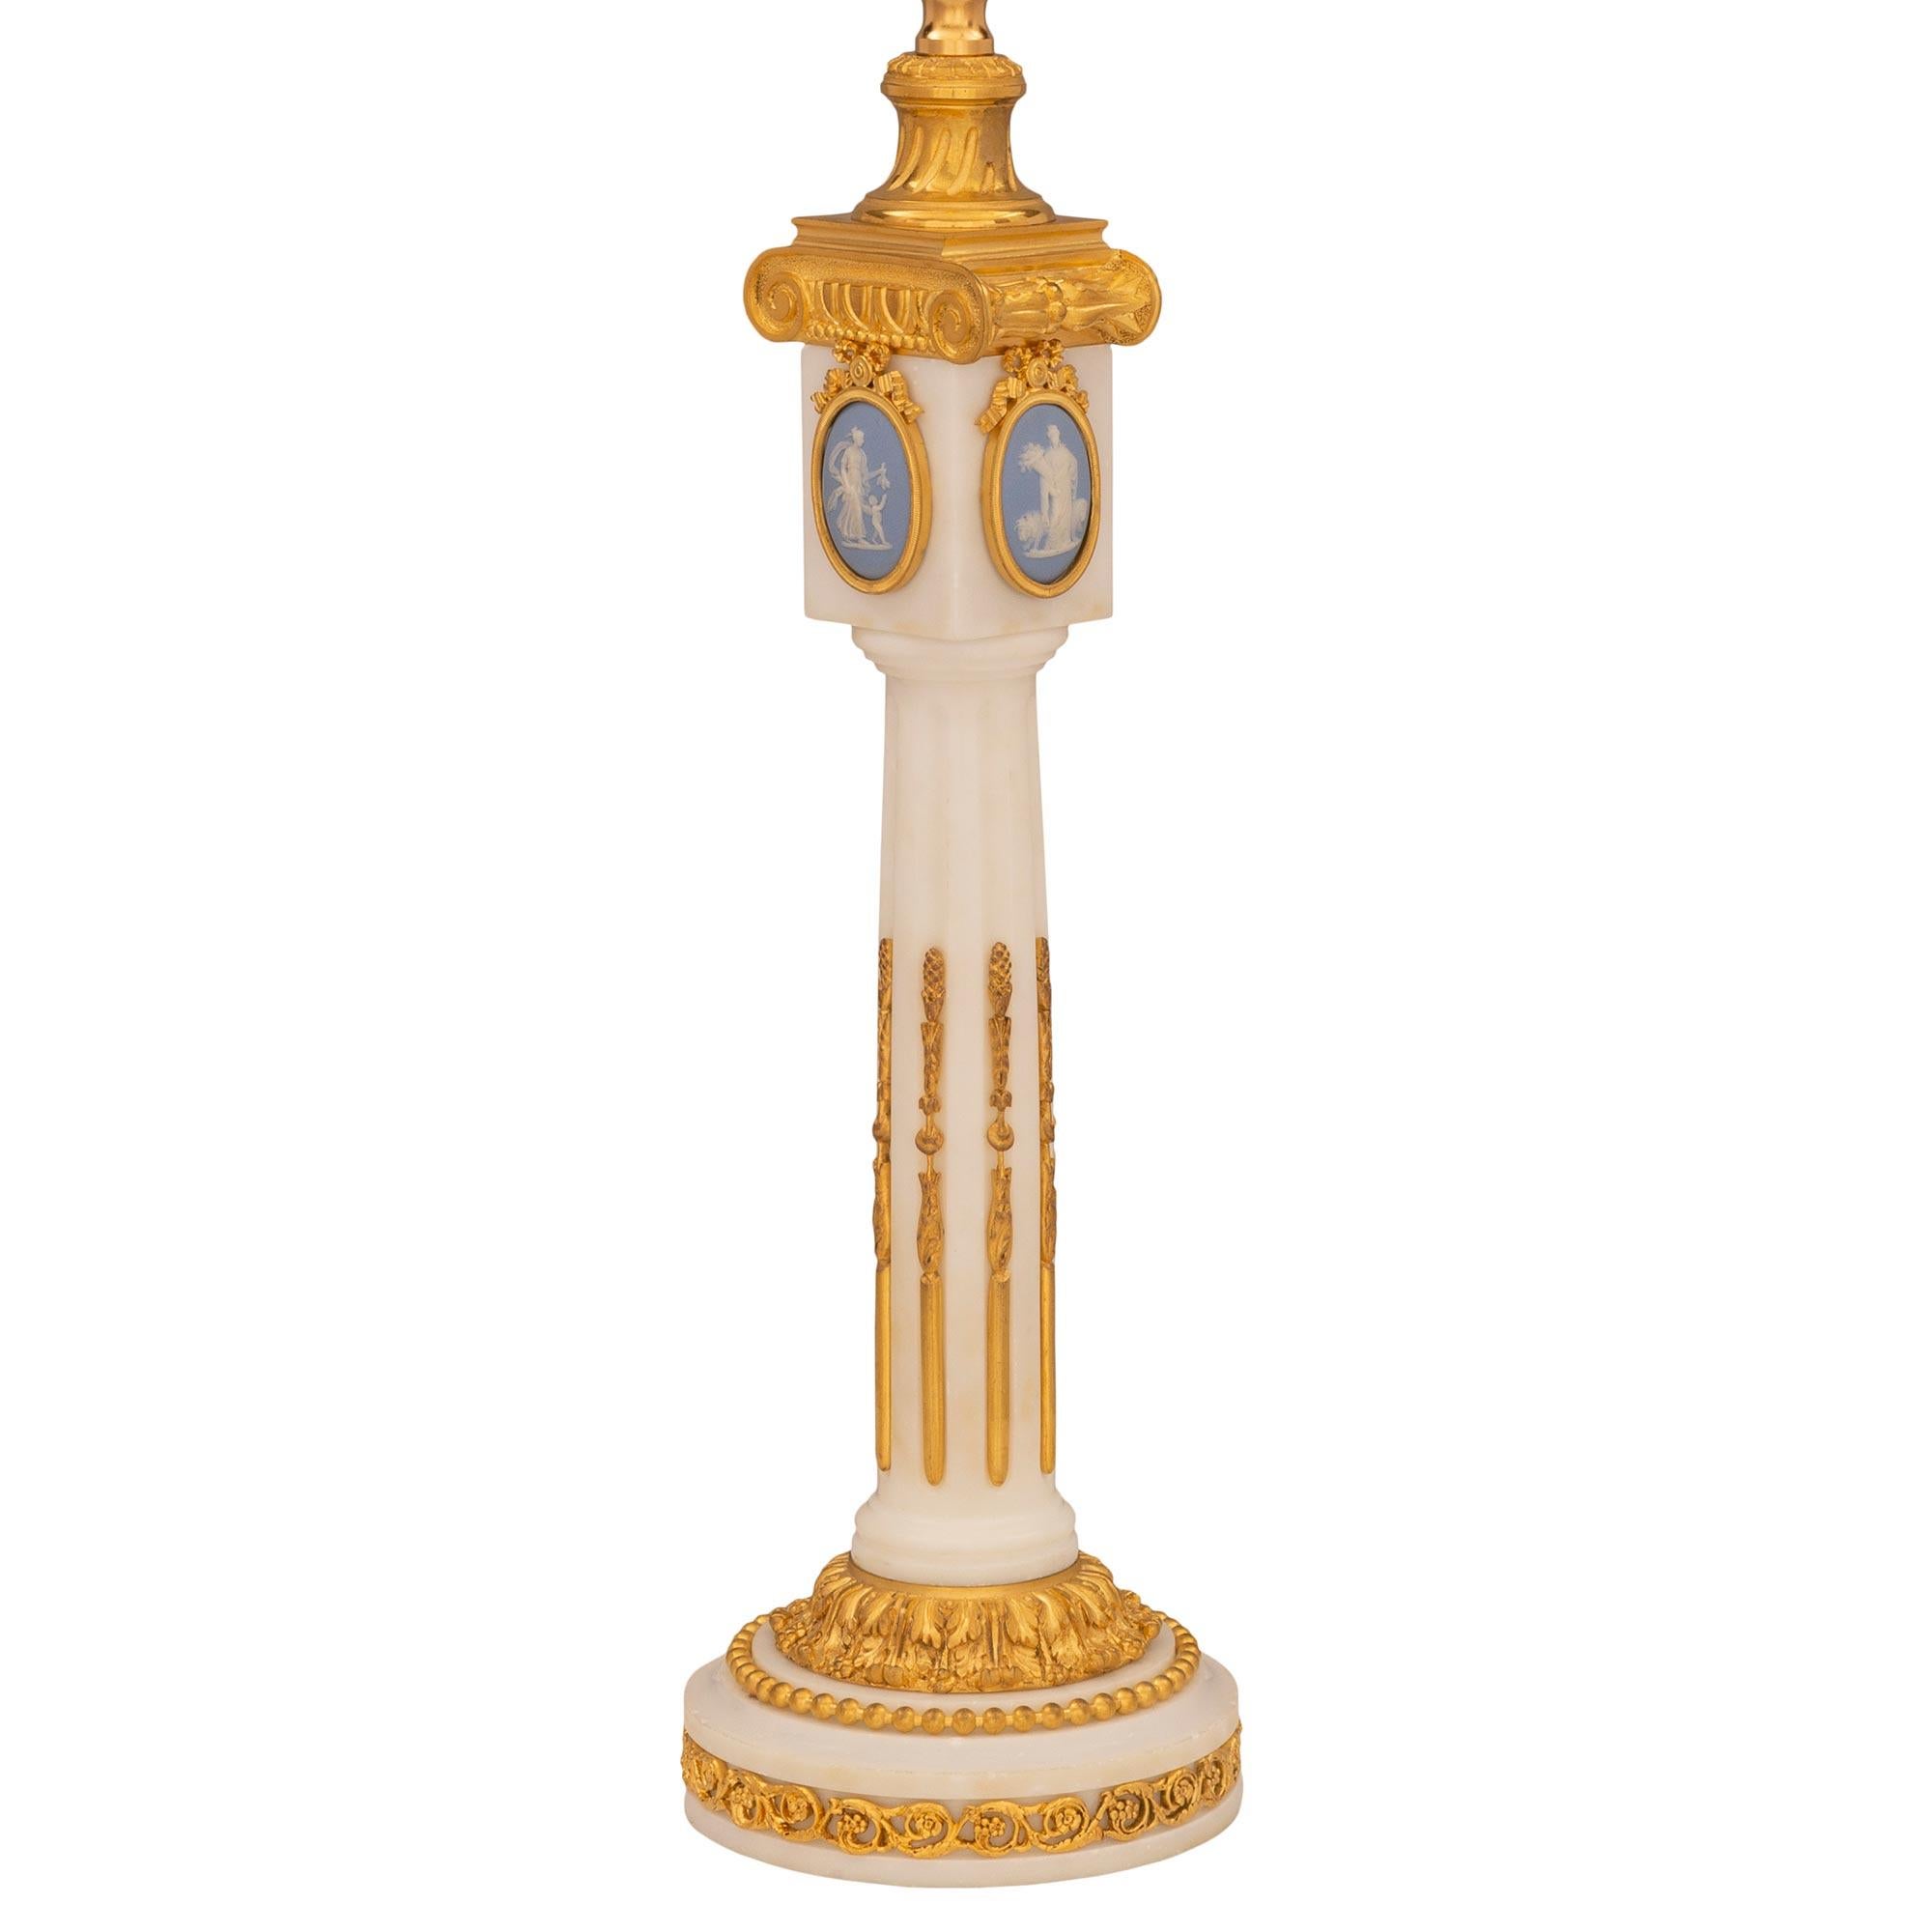 Très élégante lampe française du XIXe siècle de style Louis XVI en marbre blanc de Carrare, bronze doré et Wedgwood. La lampe repose sur une base circulaire décorée d'un magnifique bandeau en bronze doré ajouré en forme de Rinceau et de rinceaux,